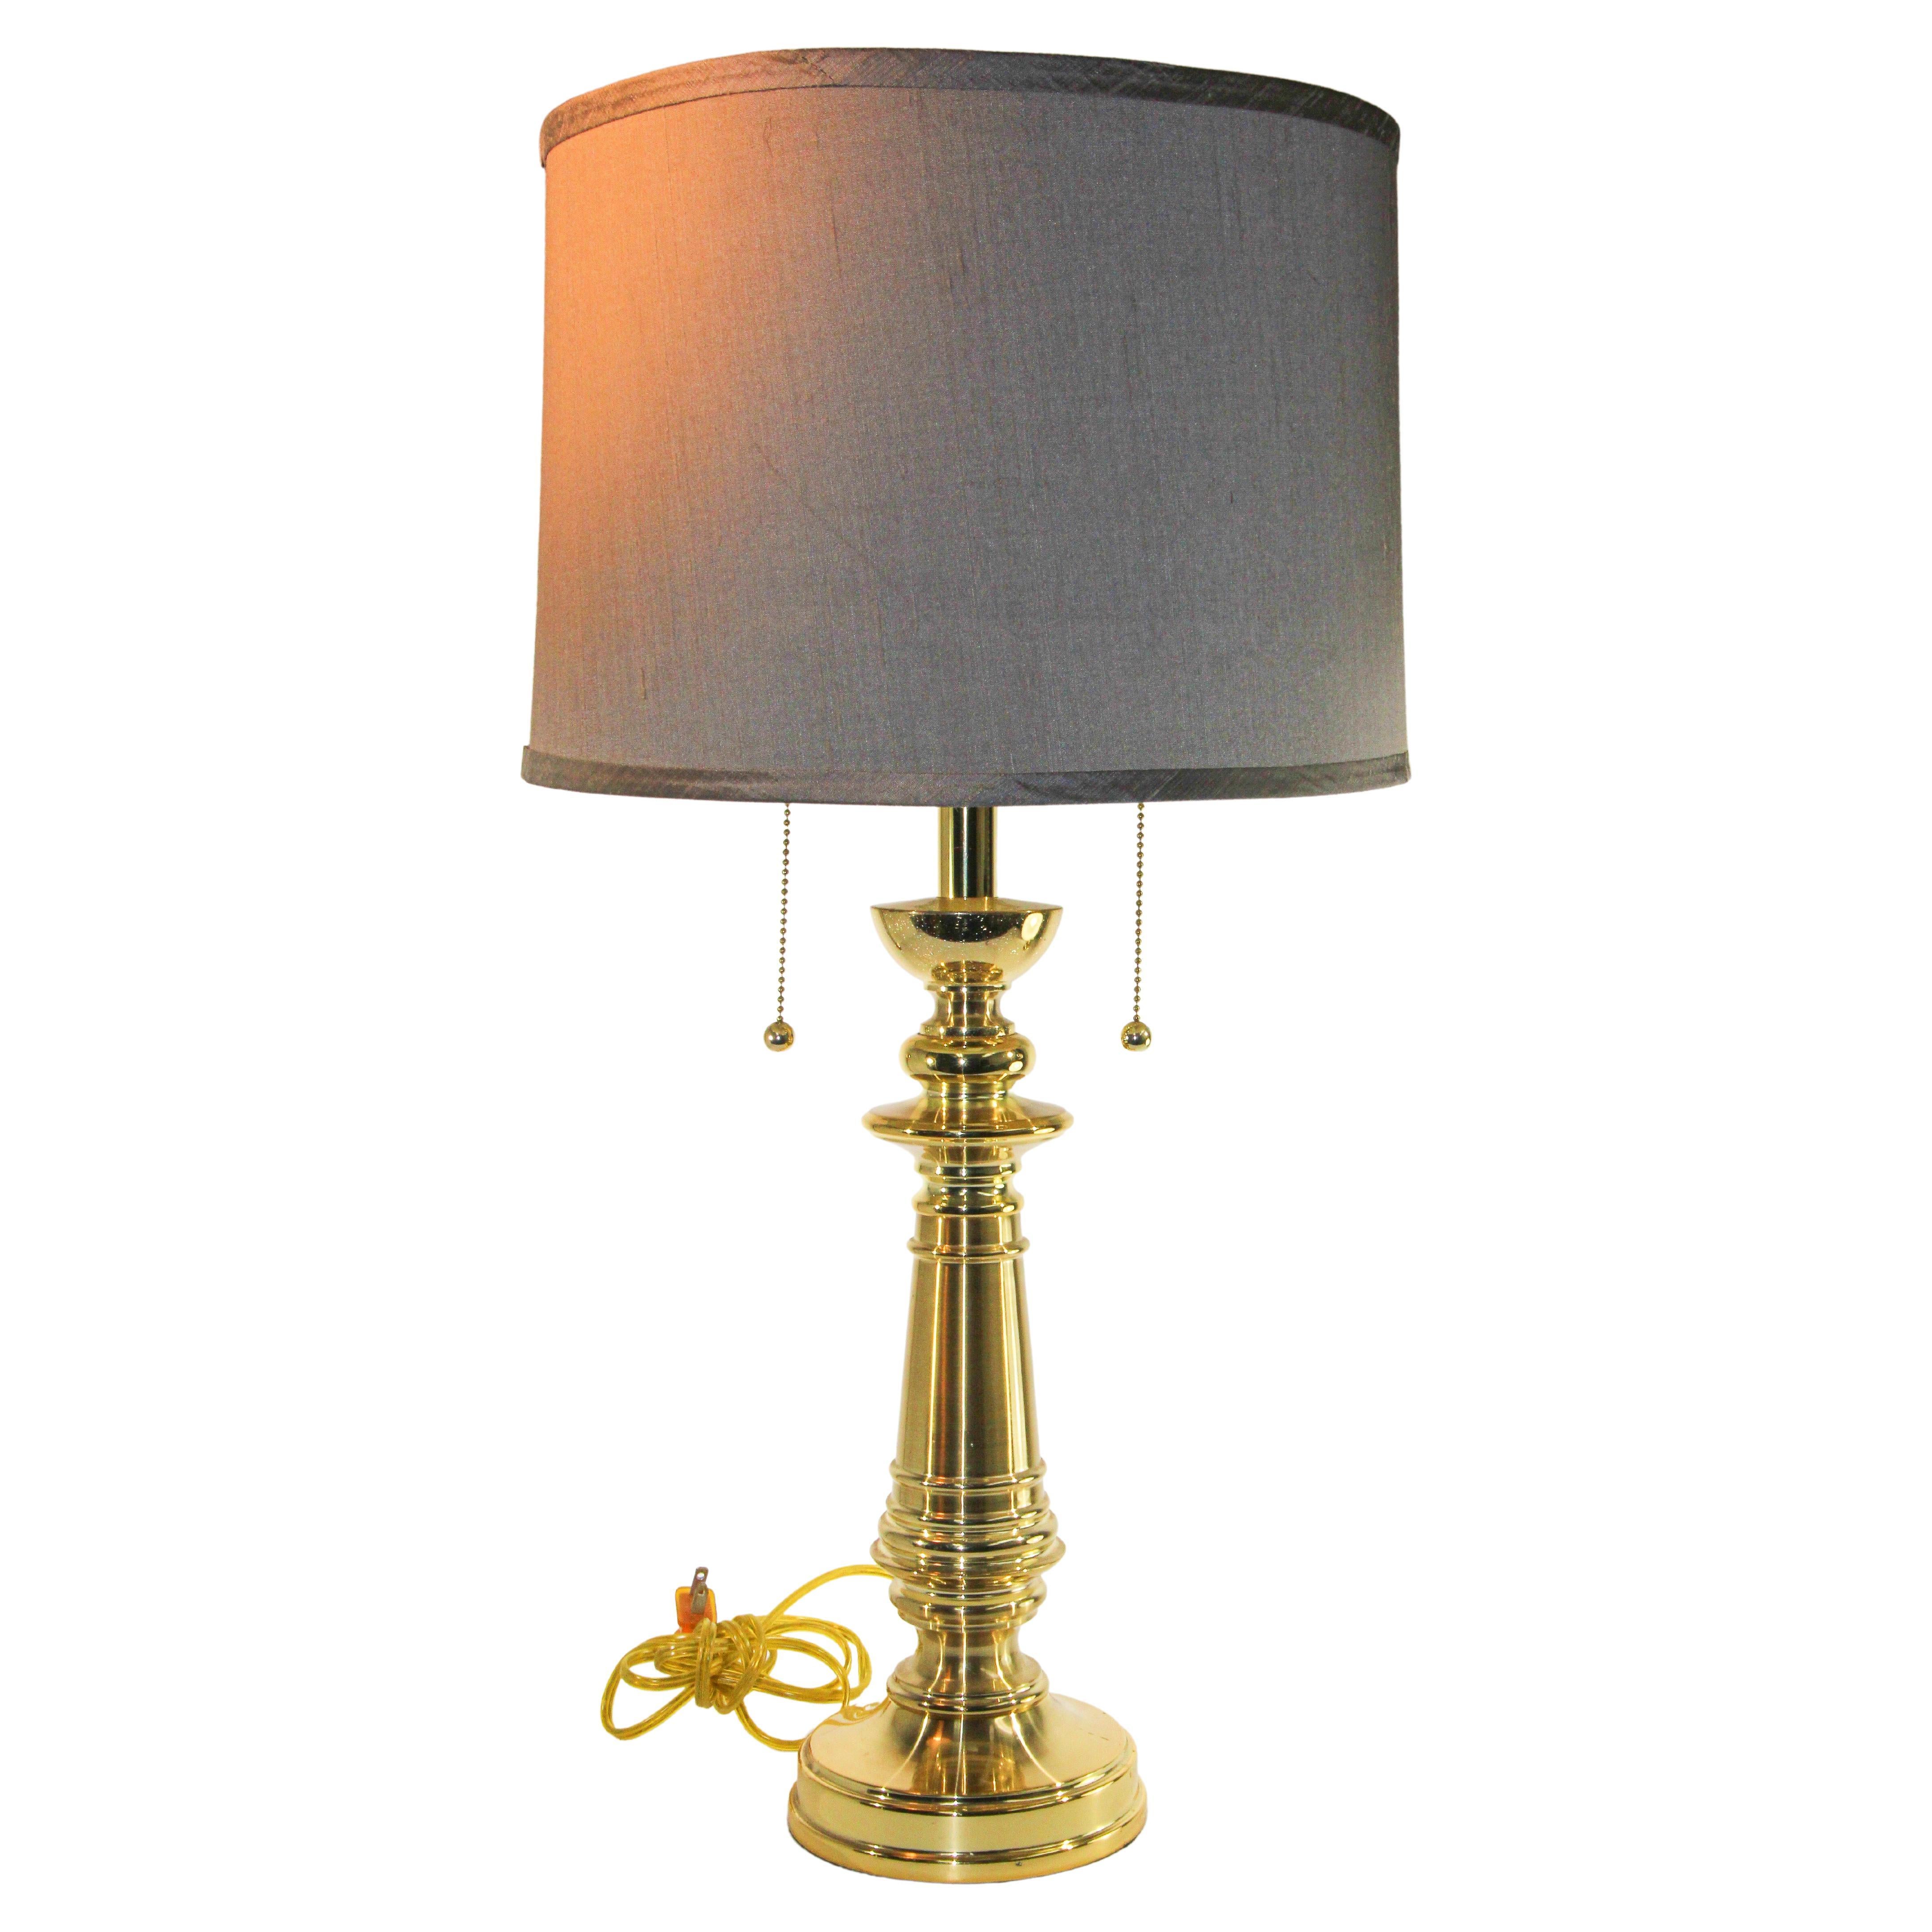 Vintage Polished Brass Turned Column Table Lamp For Sale